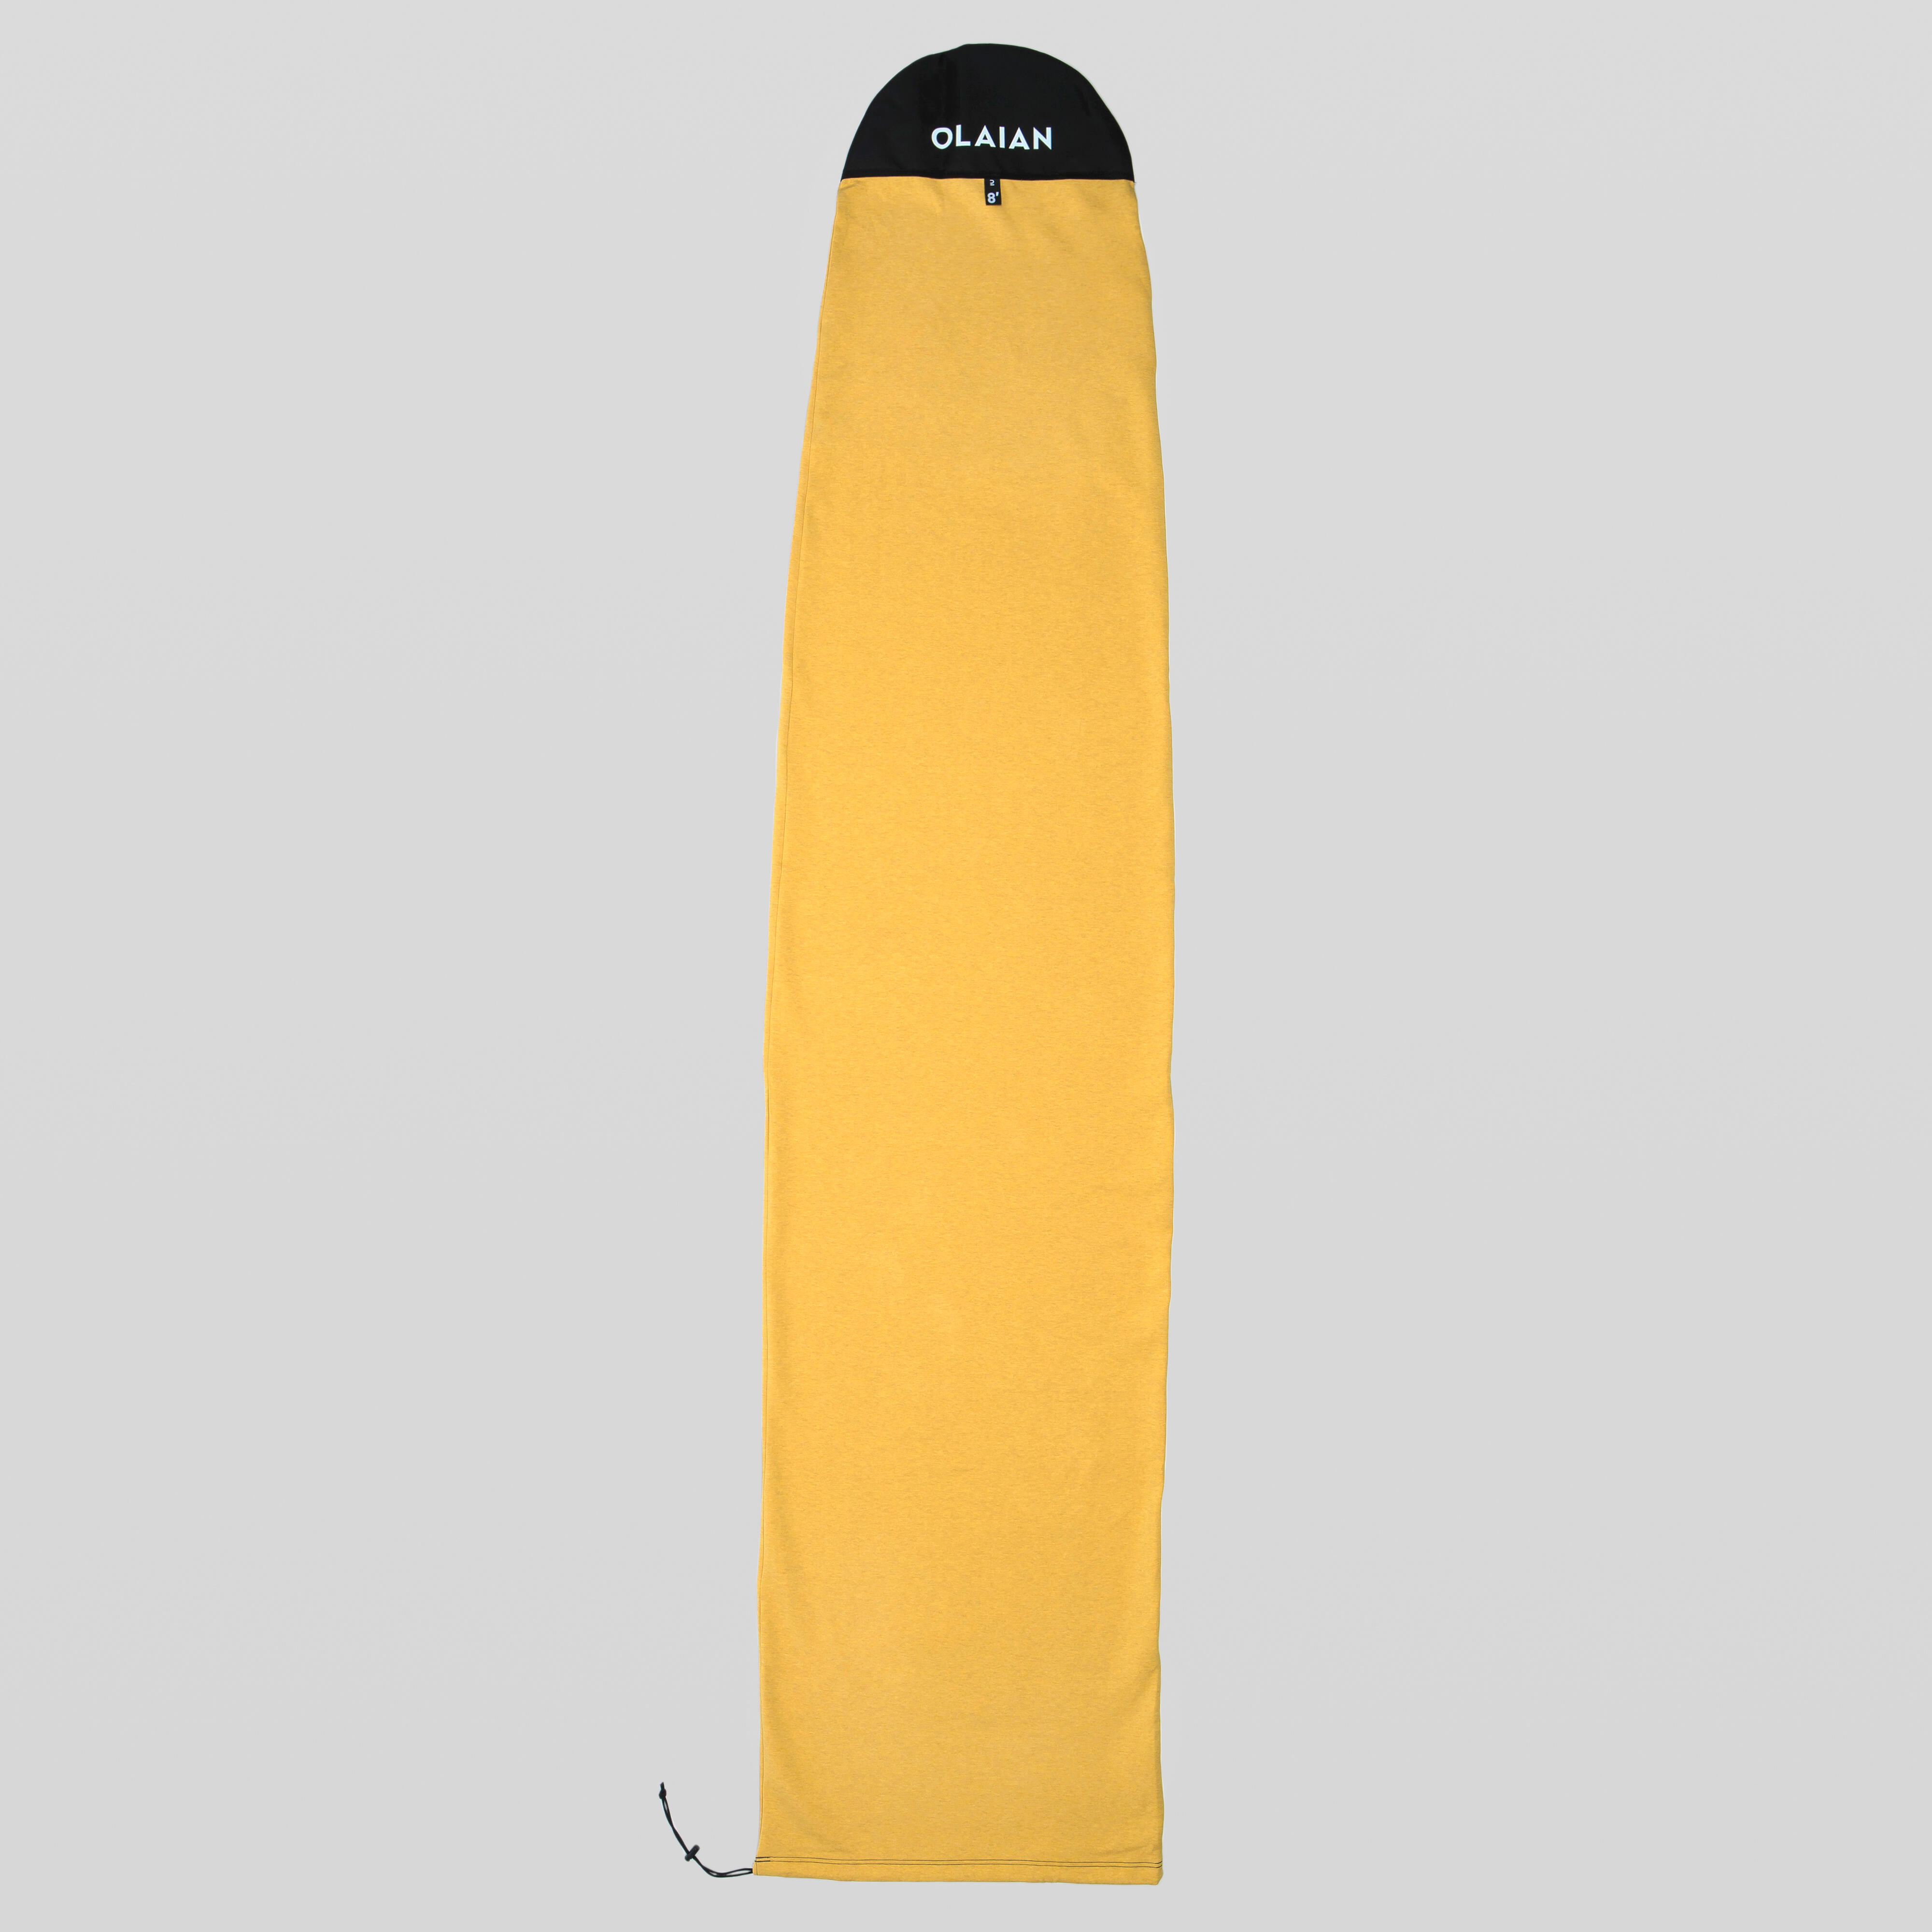 OLAIAN Boardbag für Surfboard maximale Größe 8'2'' EINHEITSGRÖSSE